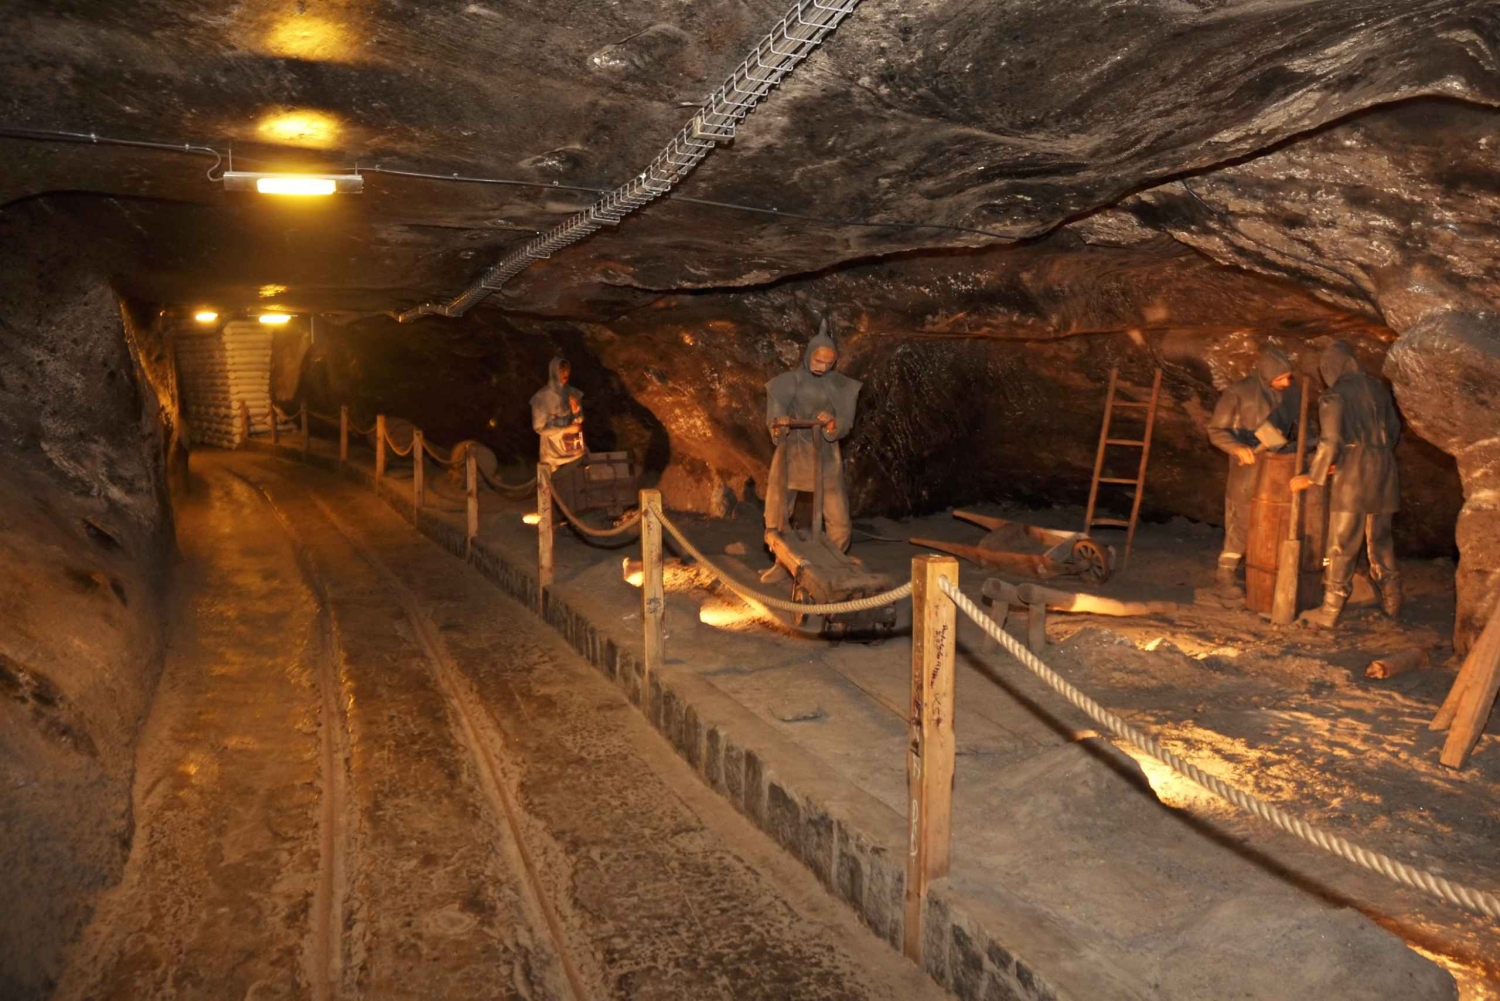 Krakow: Wieliczka Salt Mine Tour with Private Transfers